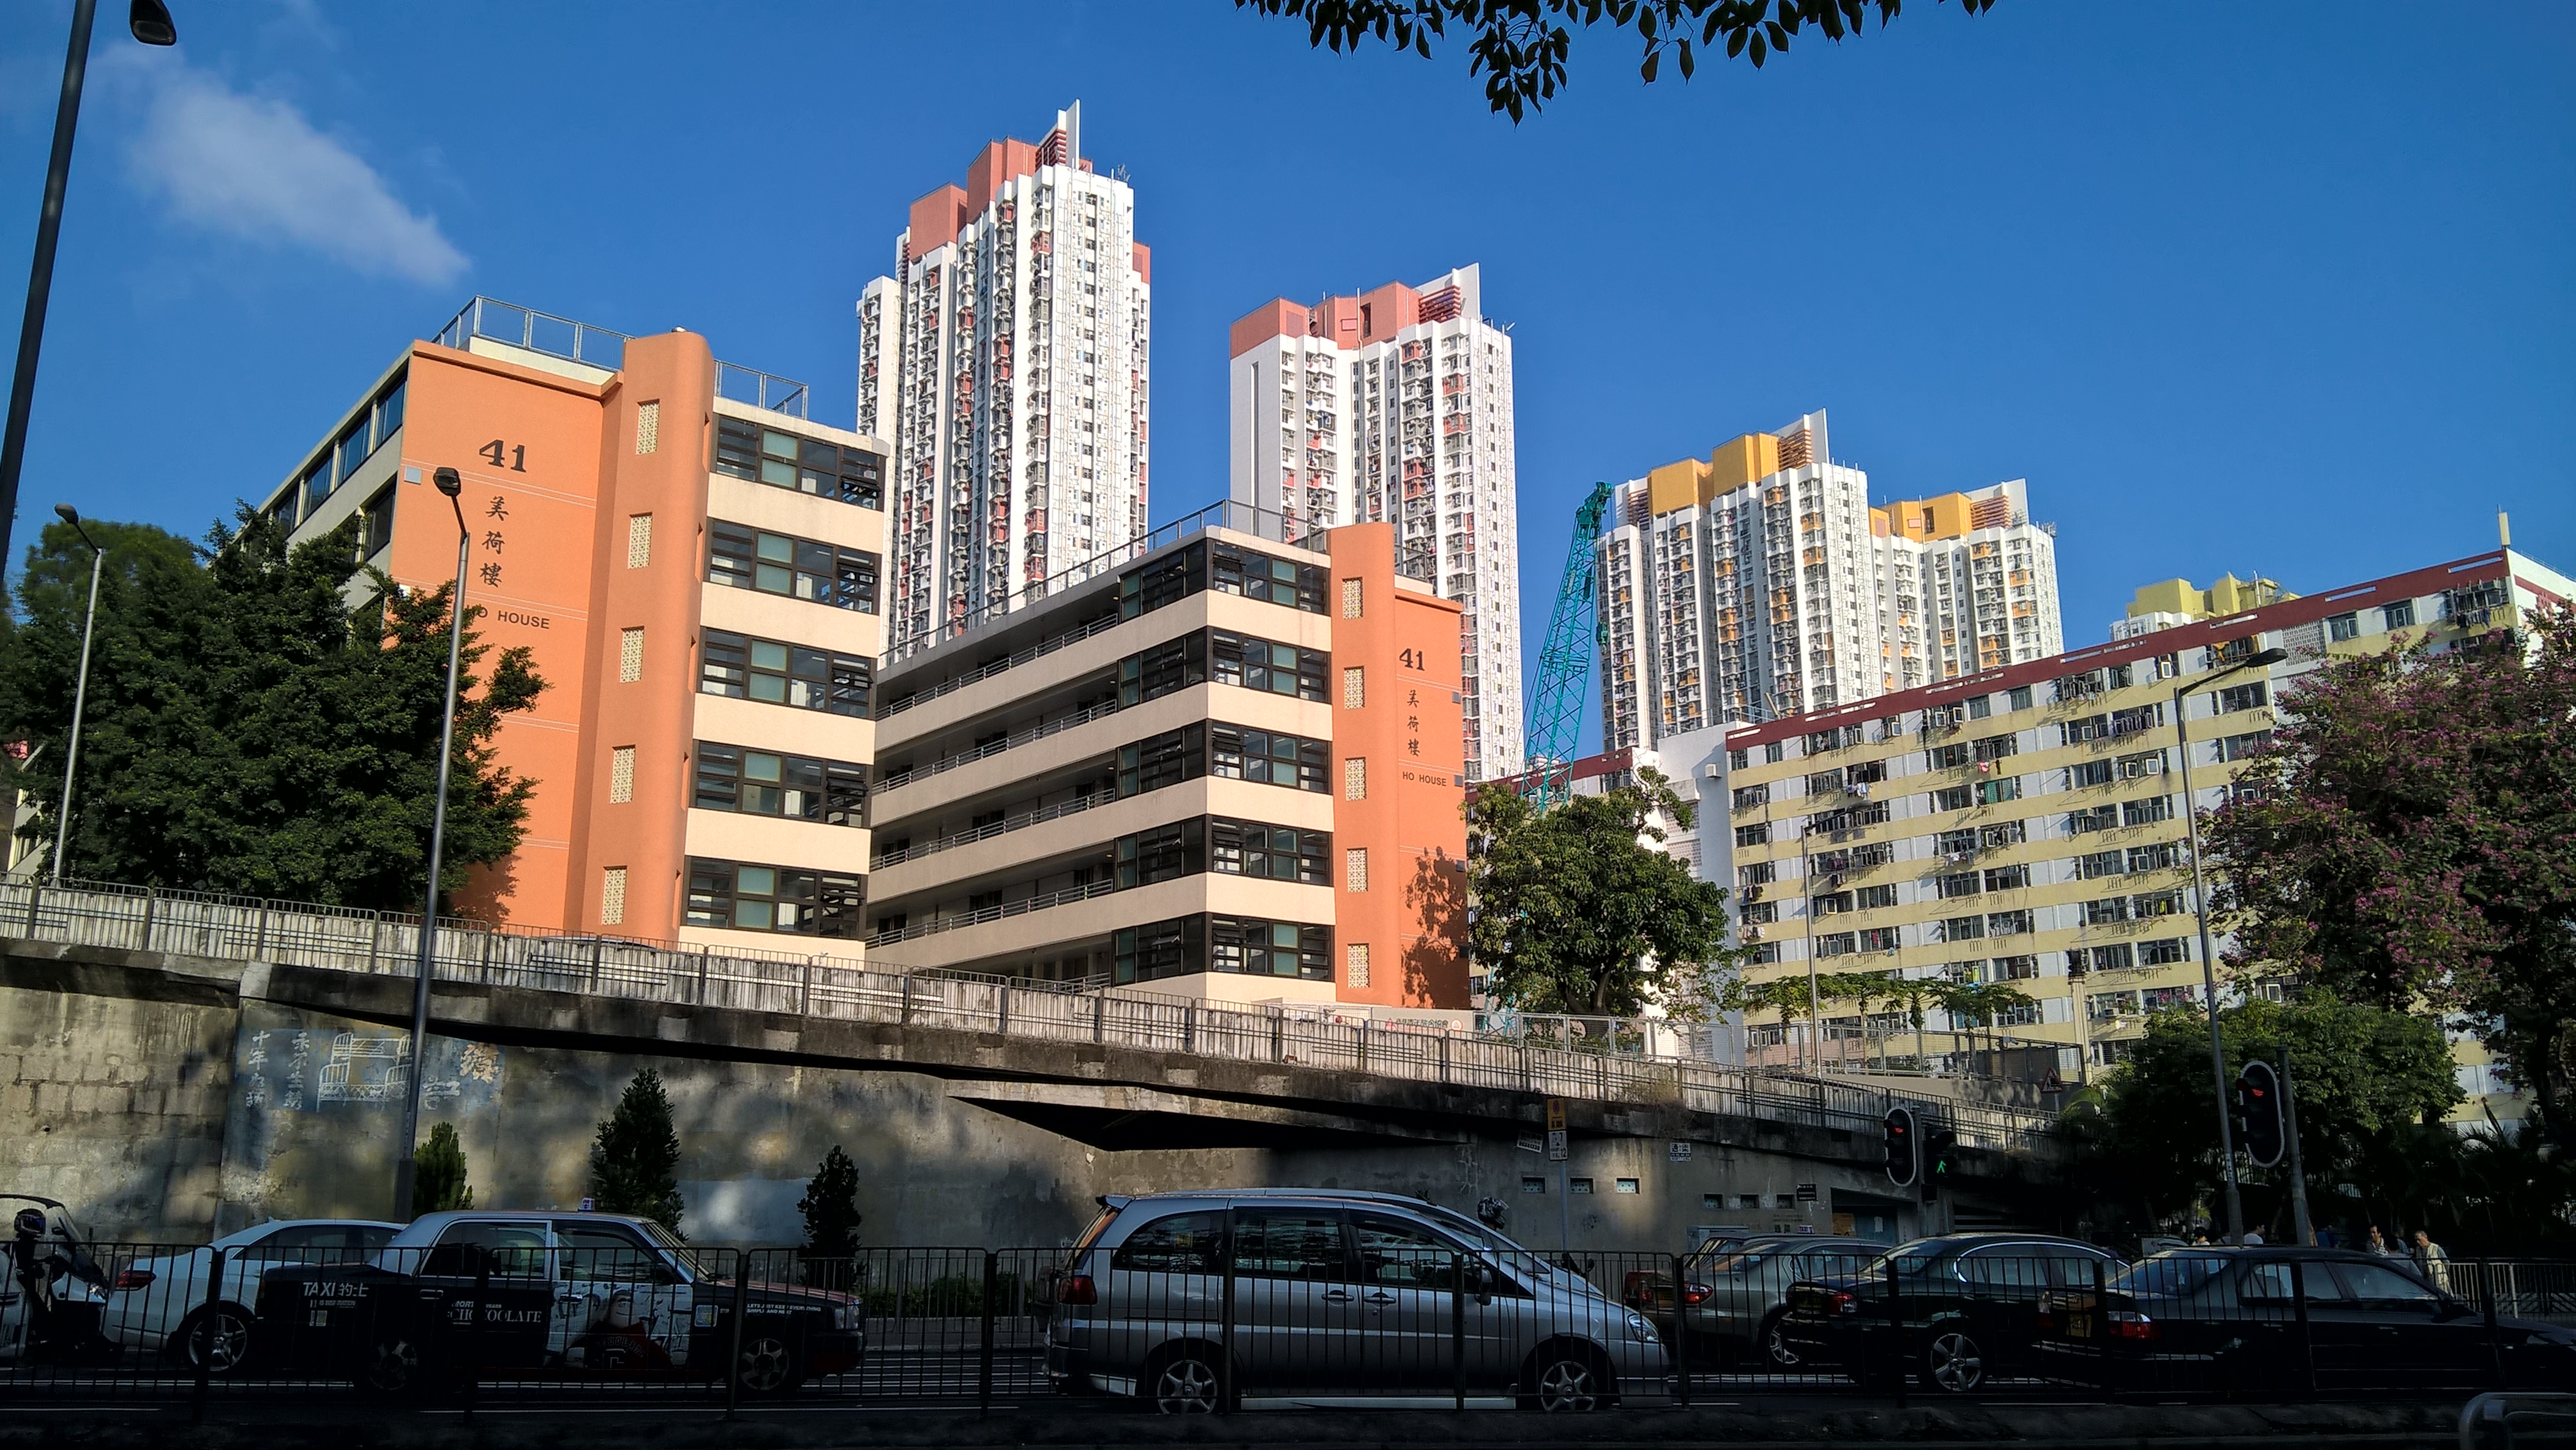 Learn public housing history at Mei Ho House